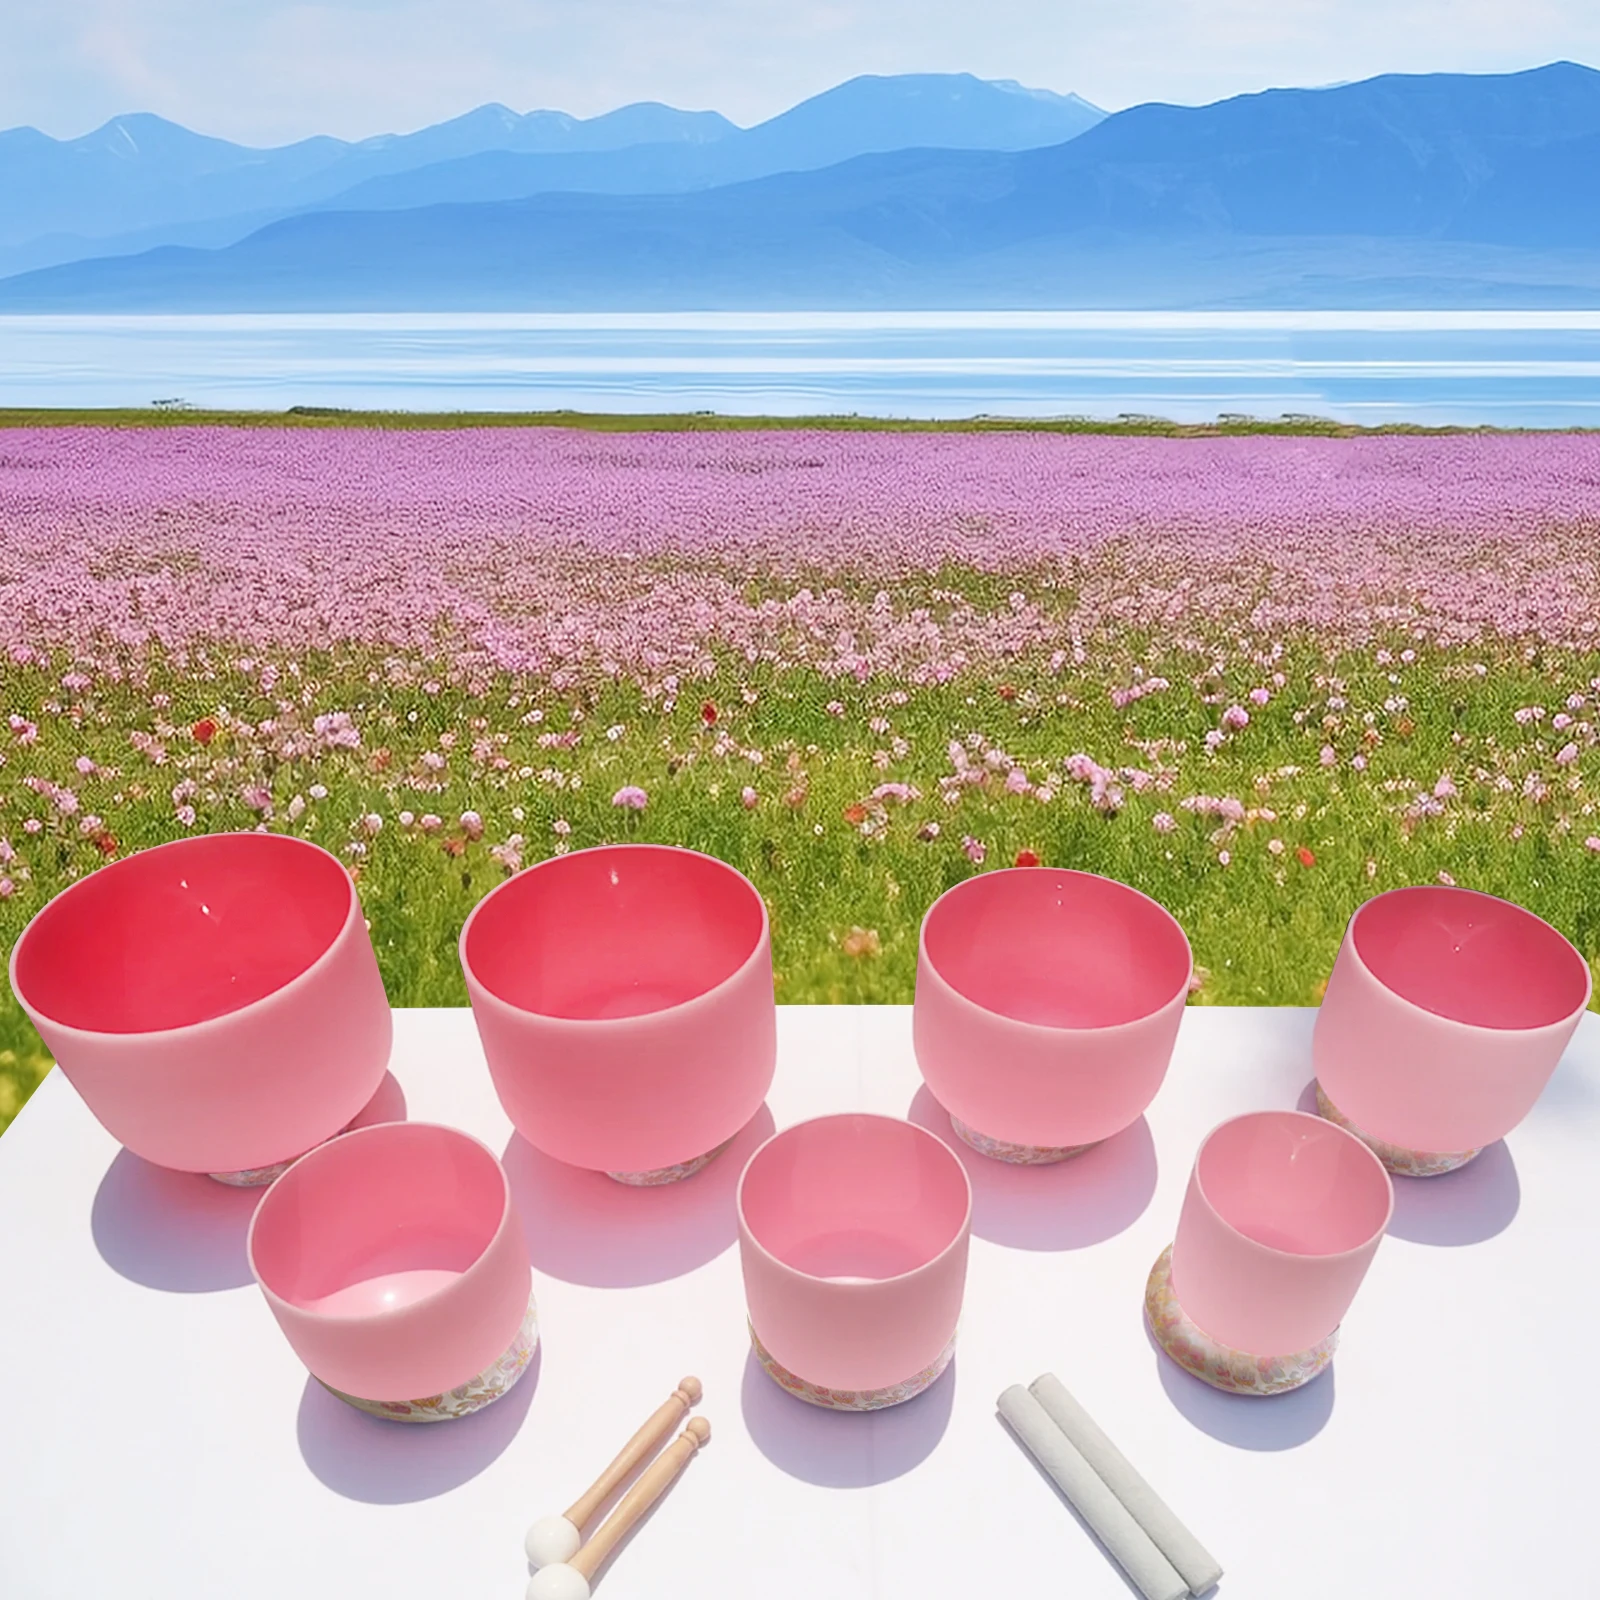 Hye-Eun Roze Kwarts Klankkom 6-12Inch Kristallen Klankschaal Abcdefg Noot Voor Yoga-Meditatie